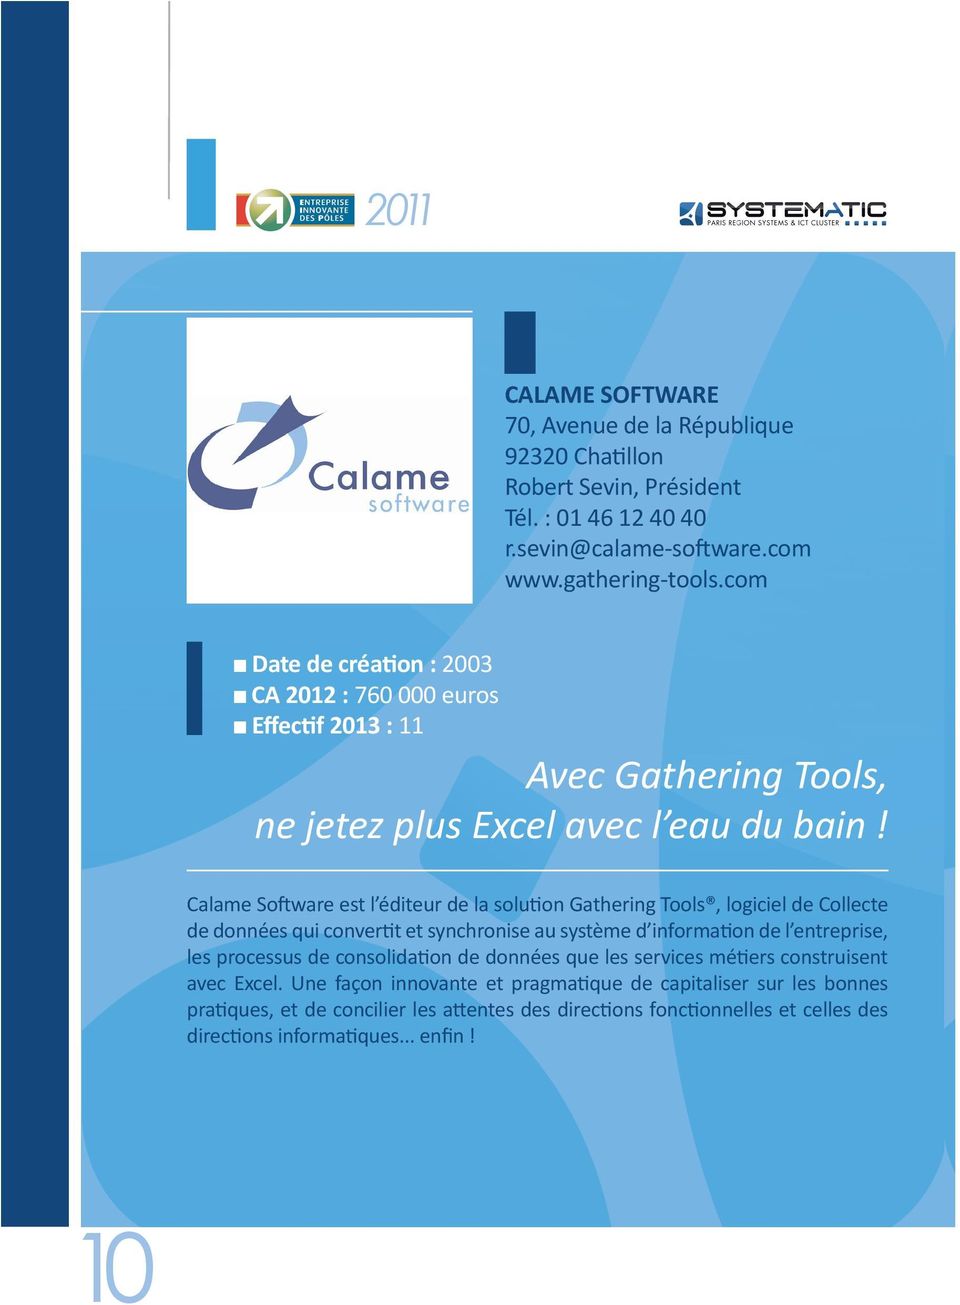 Calame Software est l éditeur de la solution Gathering Tools, logiciel de Collecte de données qui convertit et synchronise au système d information de l entreprise, les processus de